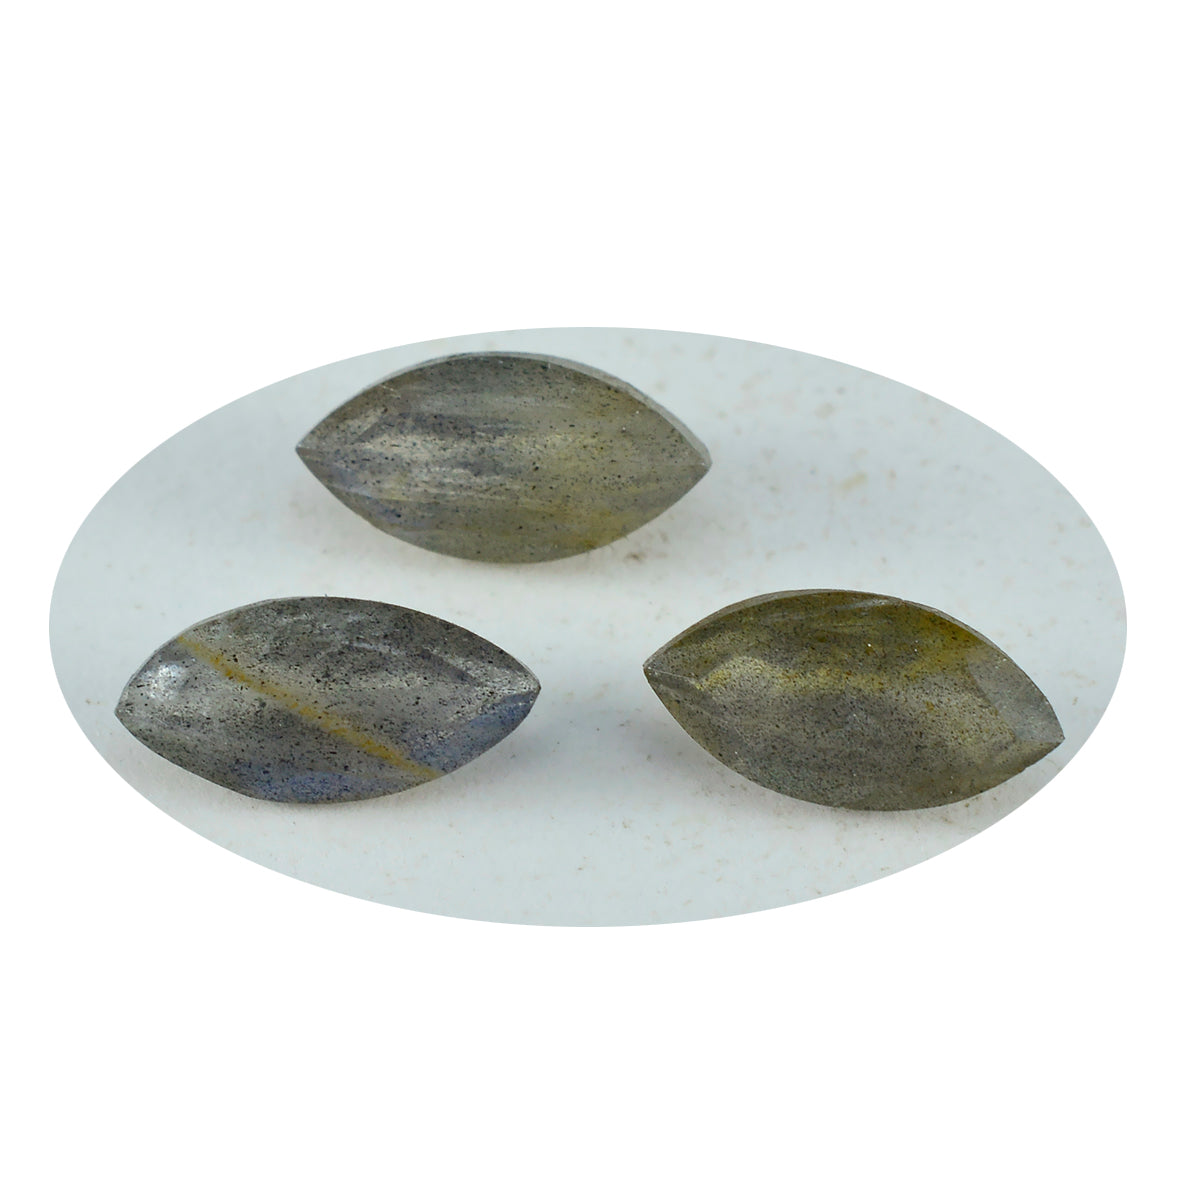 riyogems 1 шт. натуральный серый лабрадорит ограненный 7x14 мм форма маркиза удивительного качества россыпь драгоценных камней